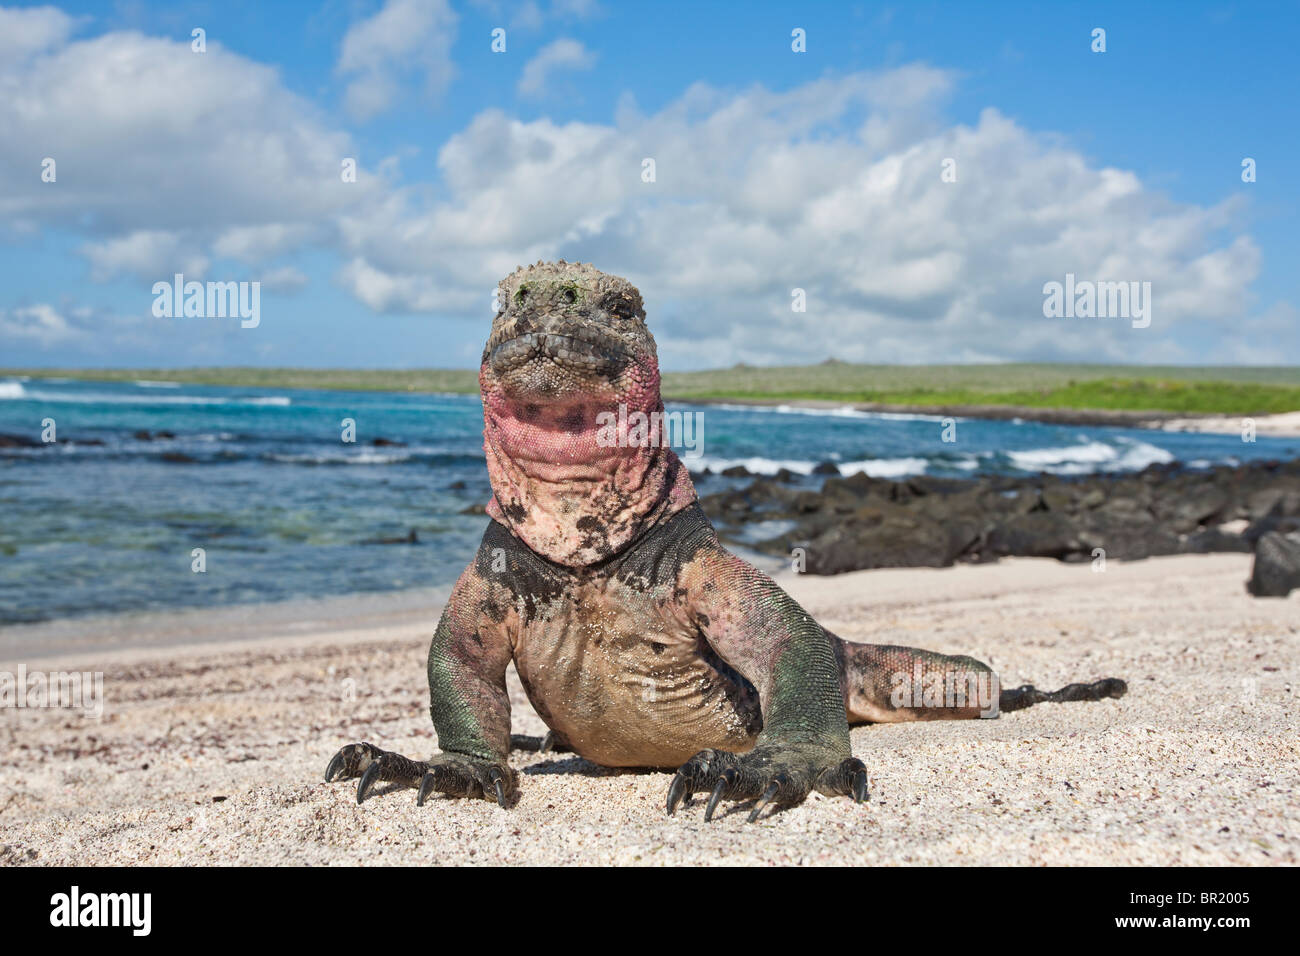 Uniquely colored red and green marine iguanas, Punto Suarez, Espanola Island, Galapagos Islands, Ecuador. Stock Photo